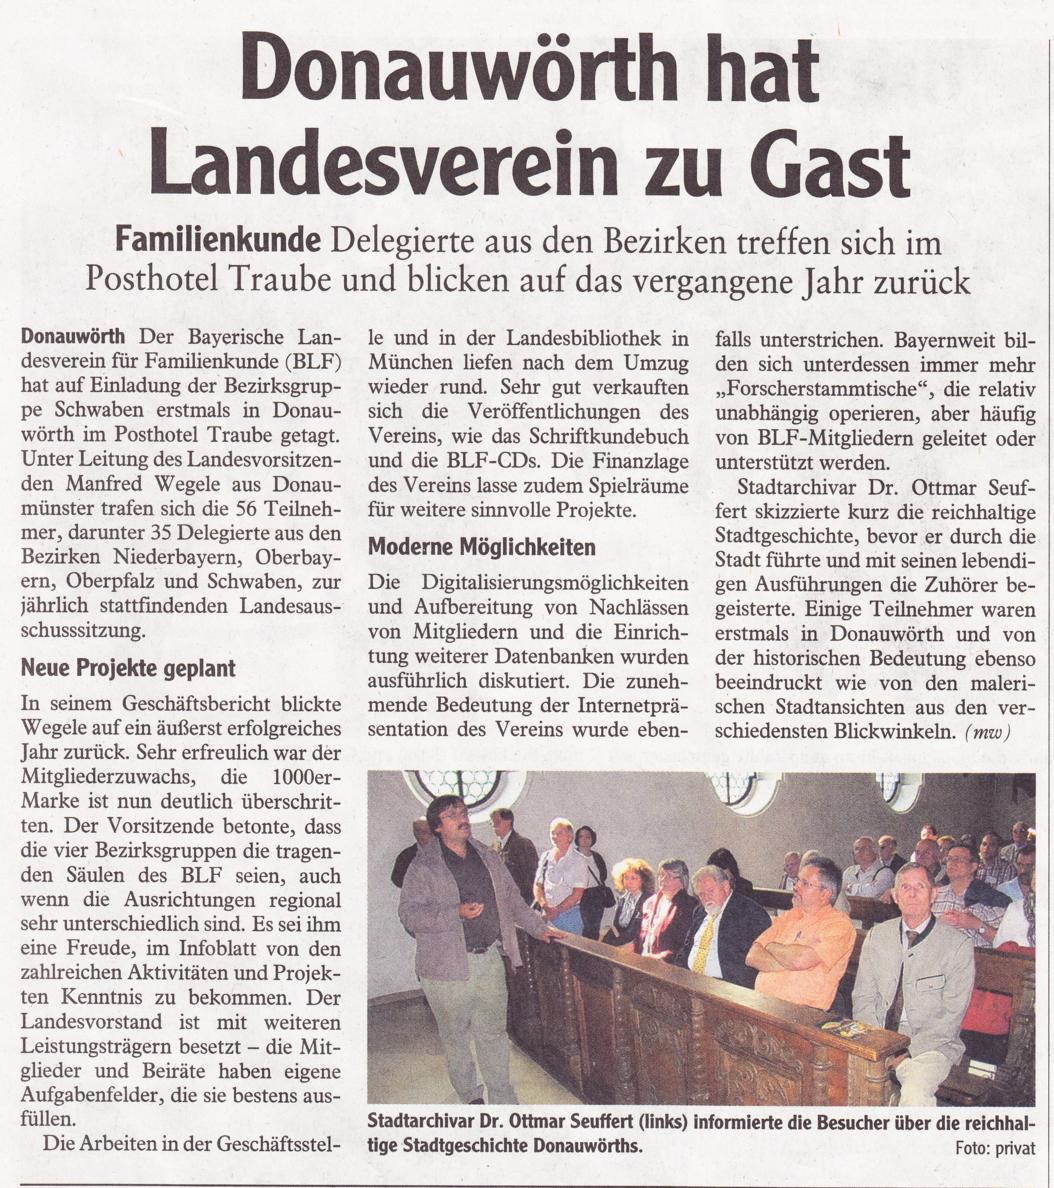 Donauwörth hat Landesverein zu Gast (Donauwörther zeitung, 20.06.2011)